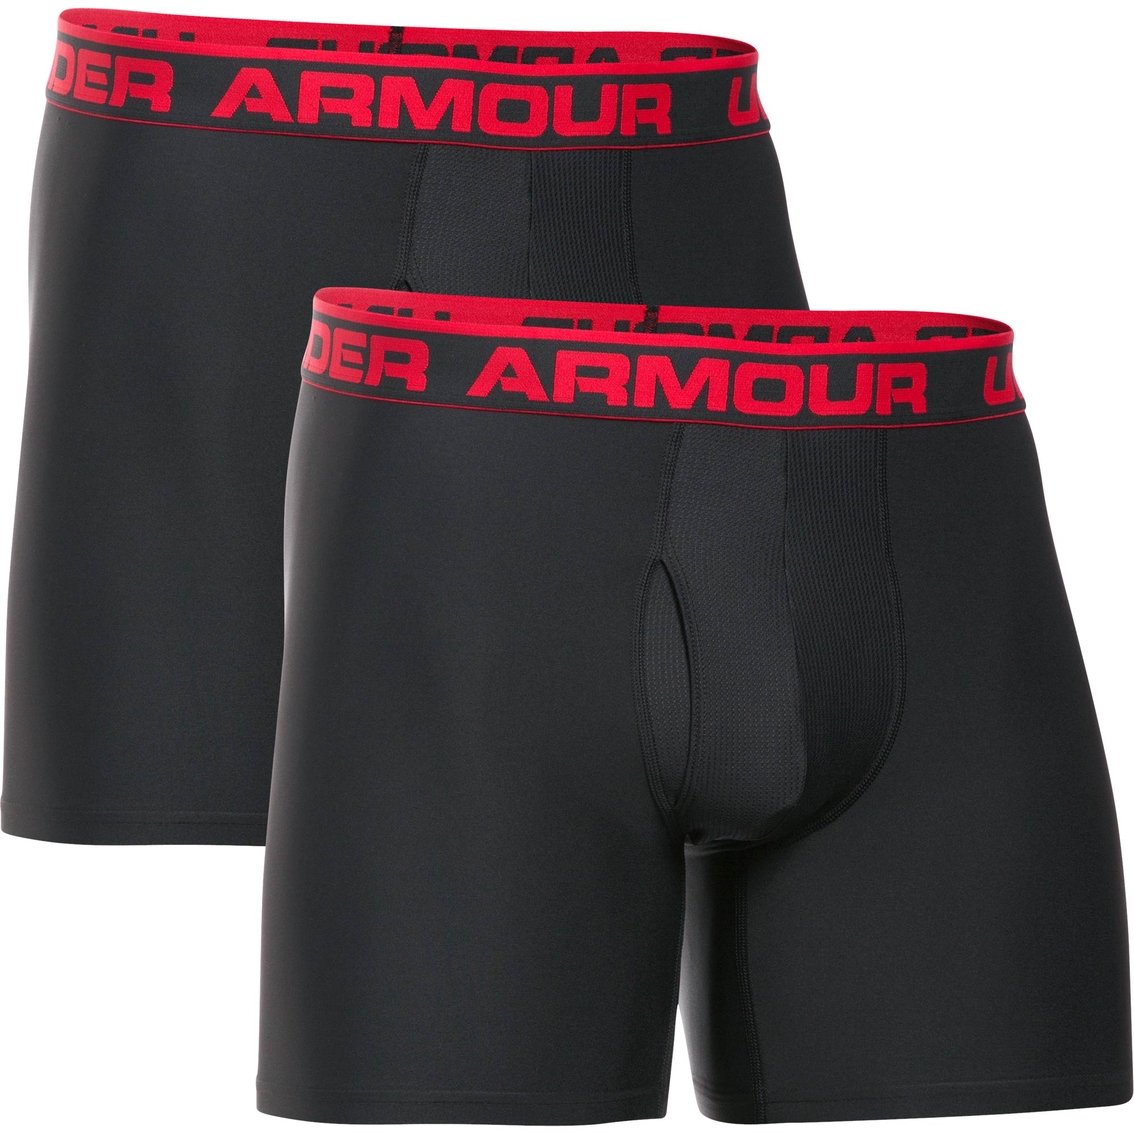 Under Armour Ua Original Series 6 In. Boxerjock Underwear, 2 Pk., Underwear, Clothing & Accessories